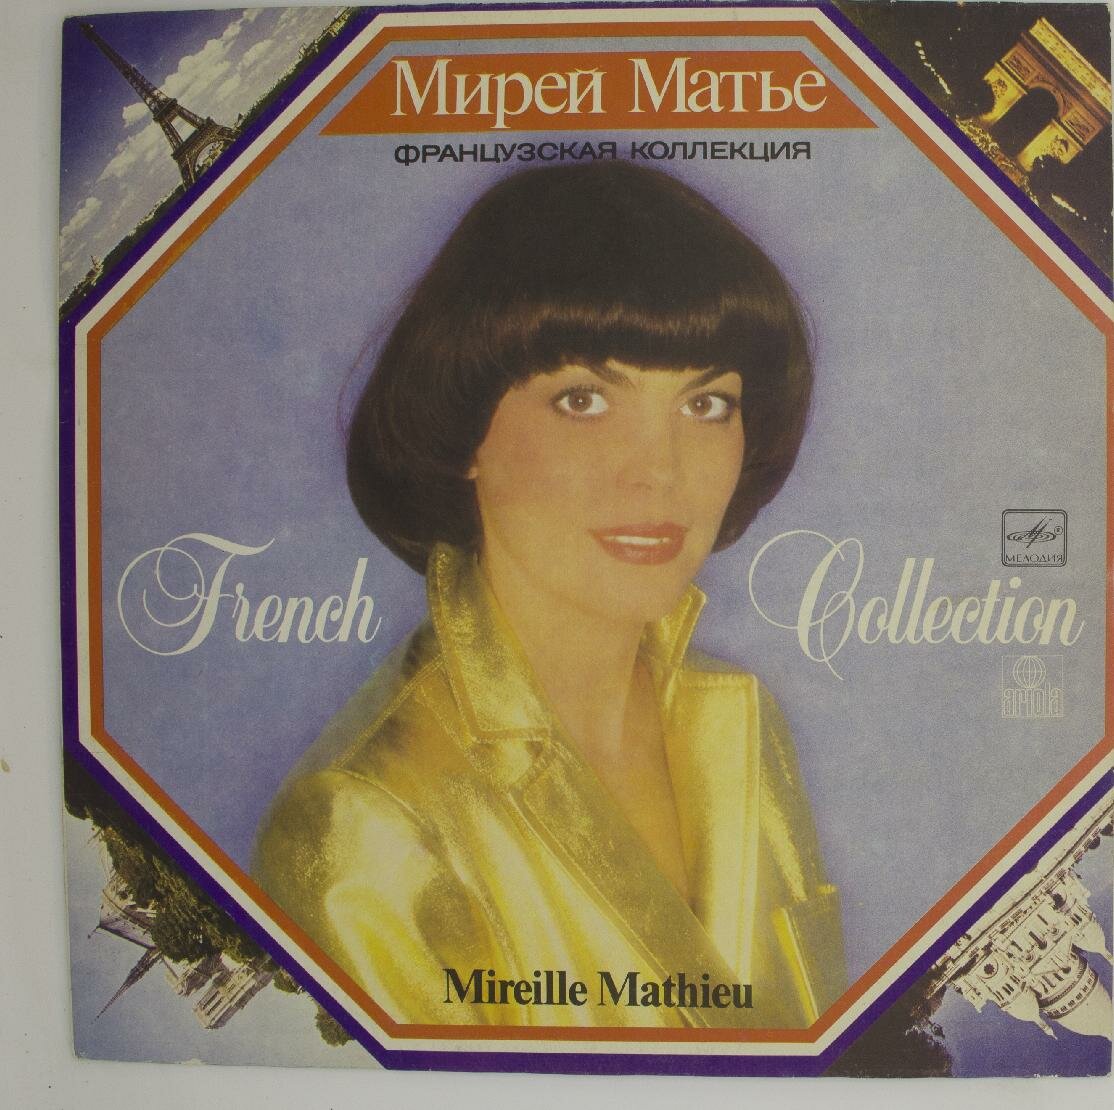 Виниловая пластинка Мирей Матье Mireille Mathieu - Французс